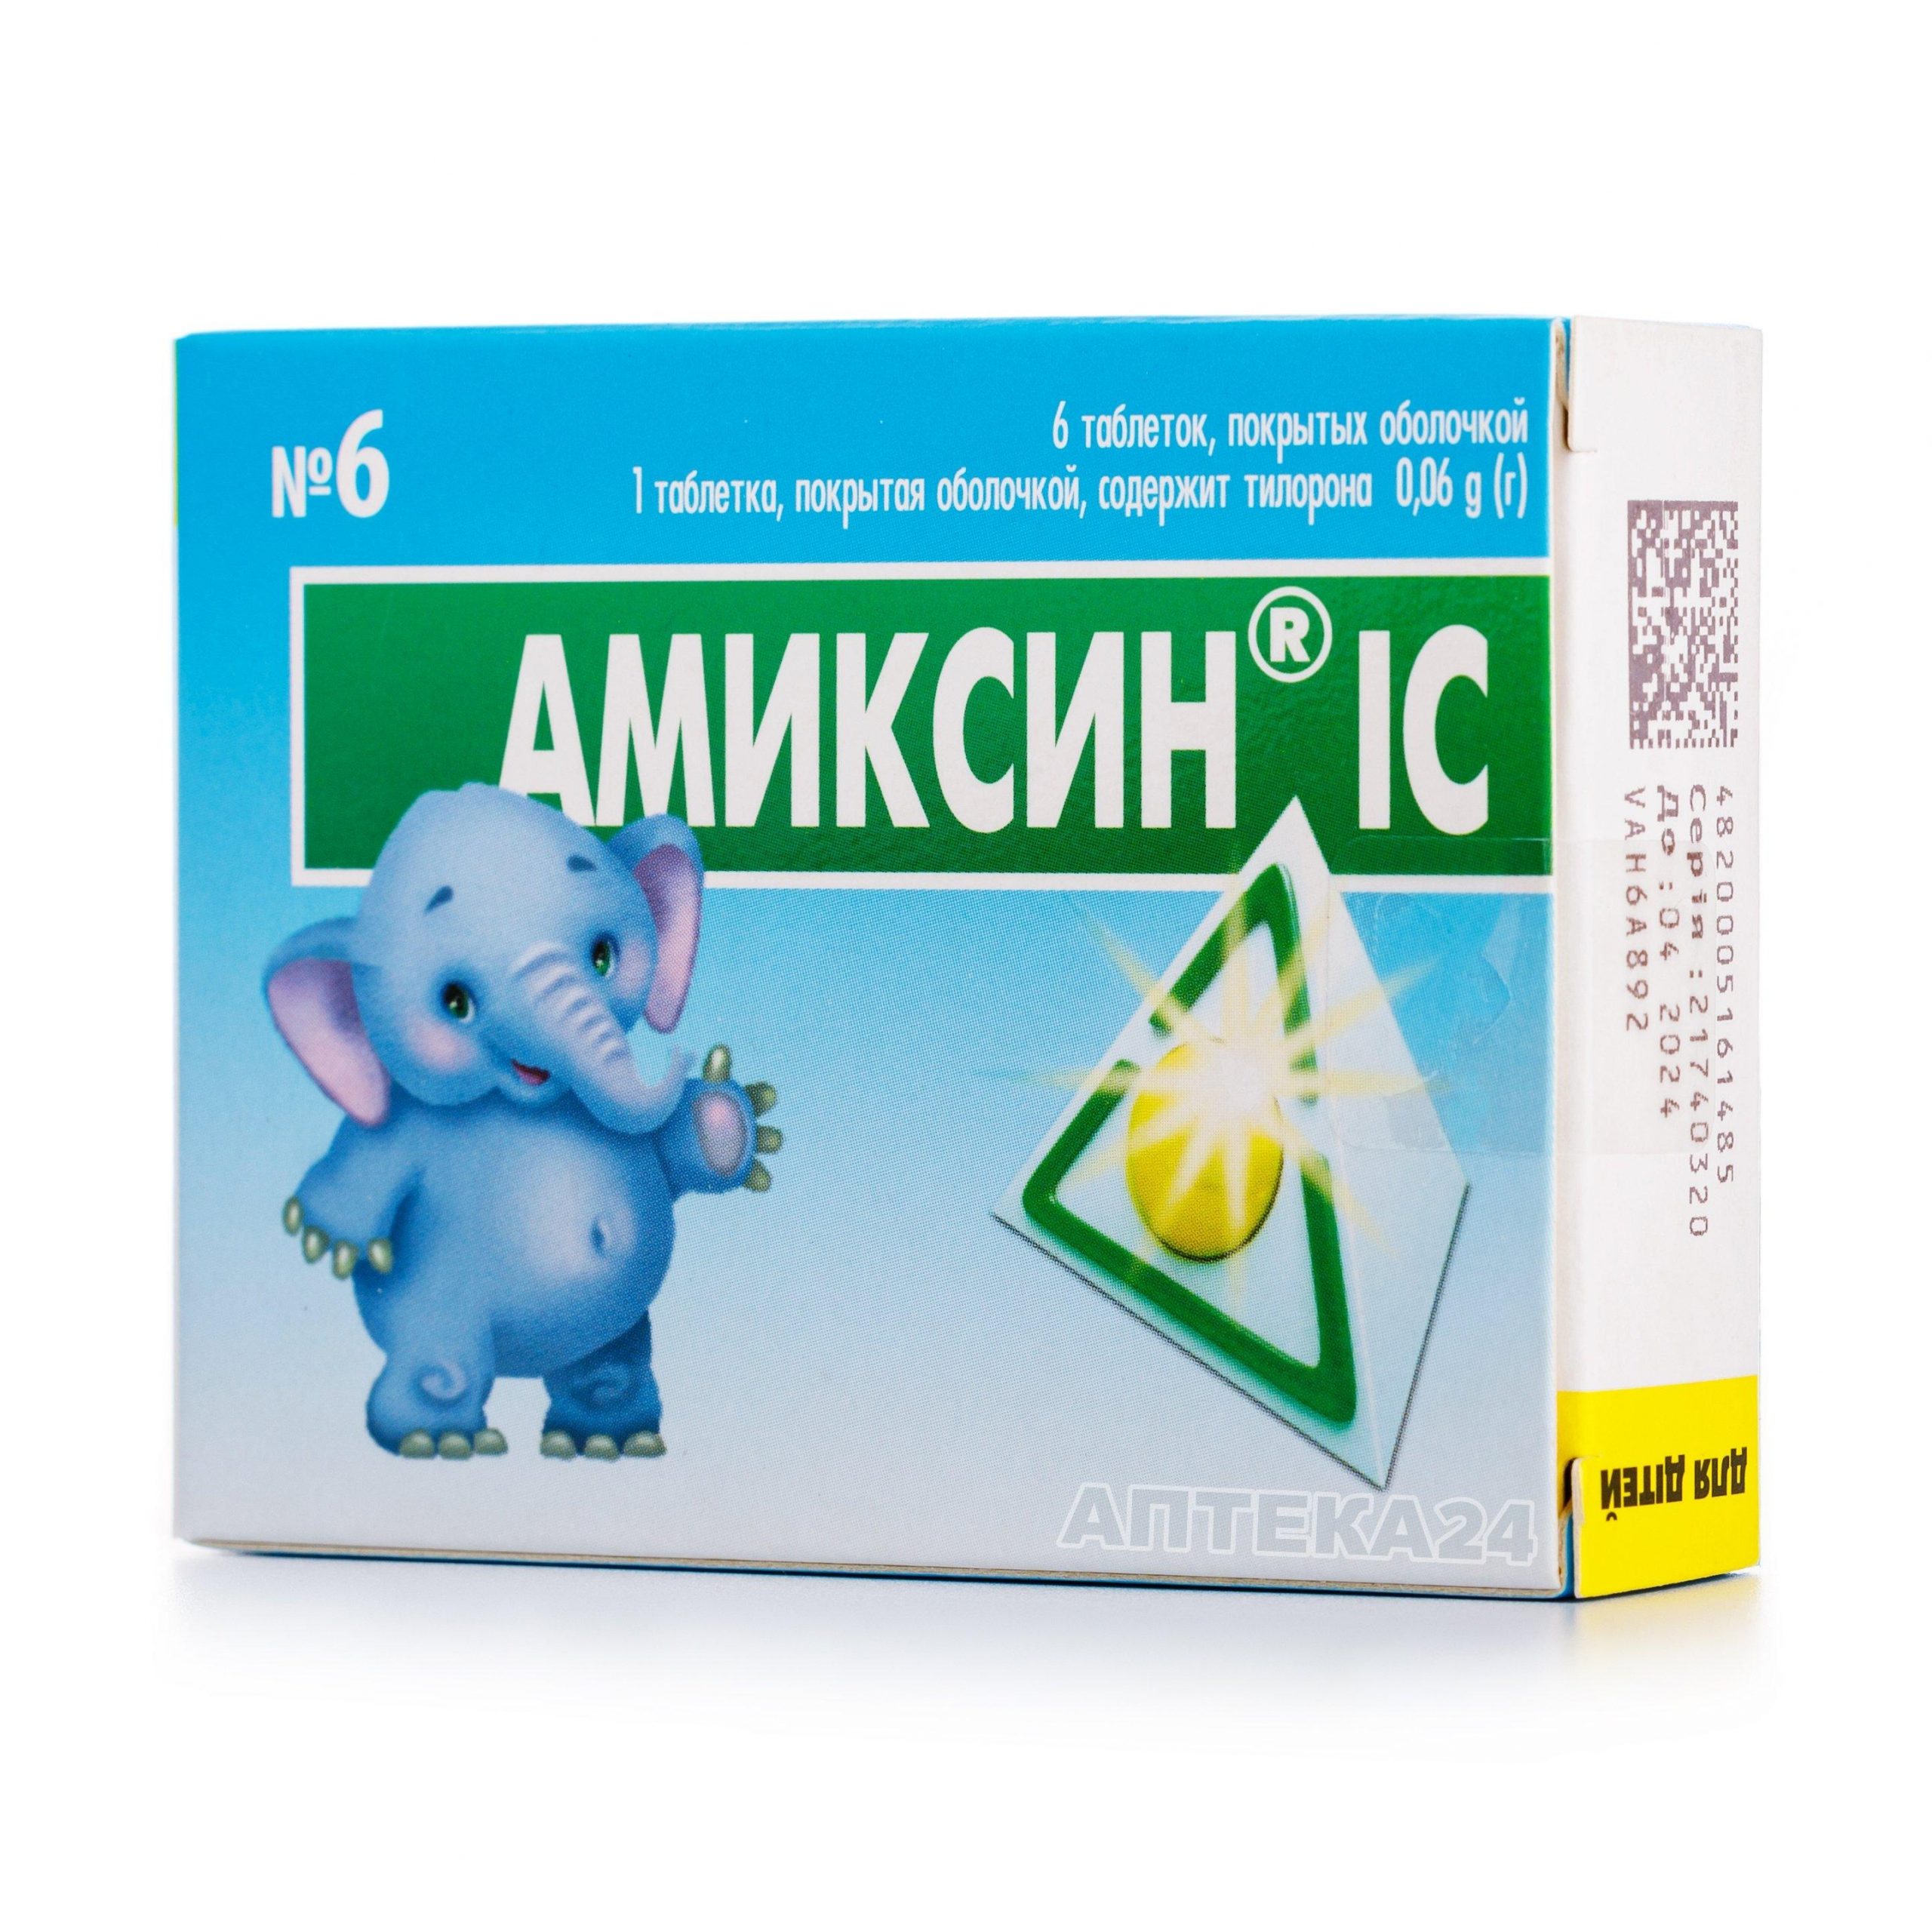 Амиксин® IC 0.06 г №6 таблетки_6005b5853f8e9.jpeg